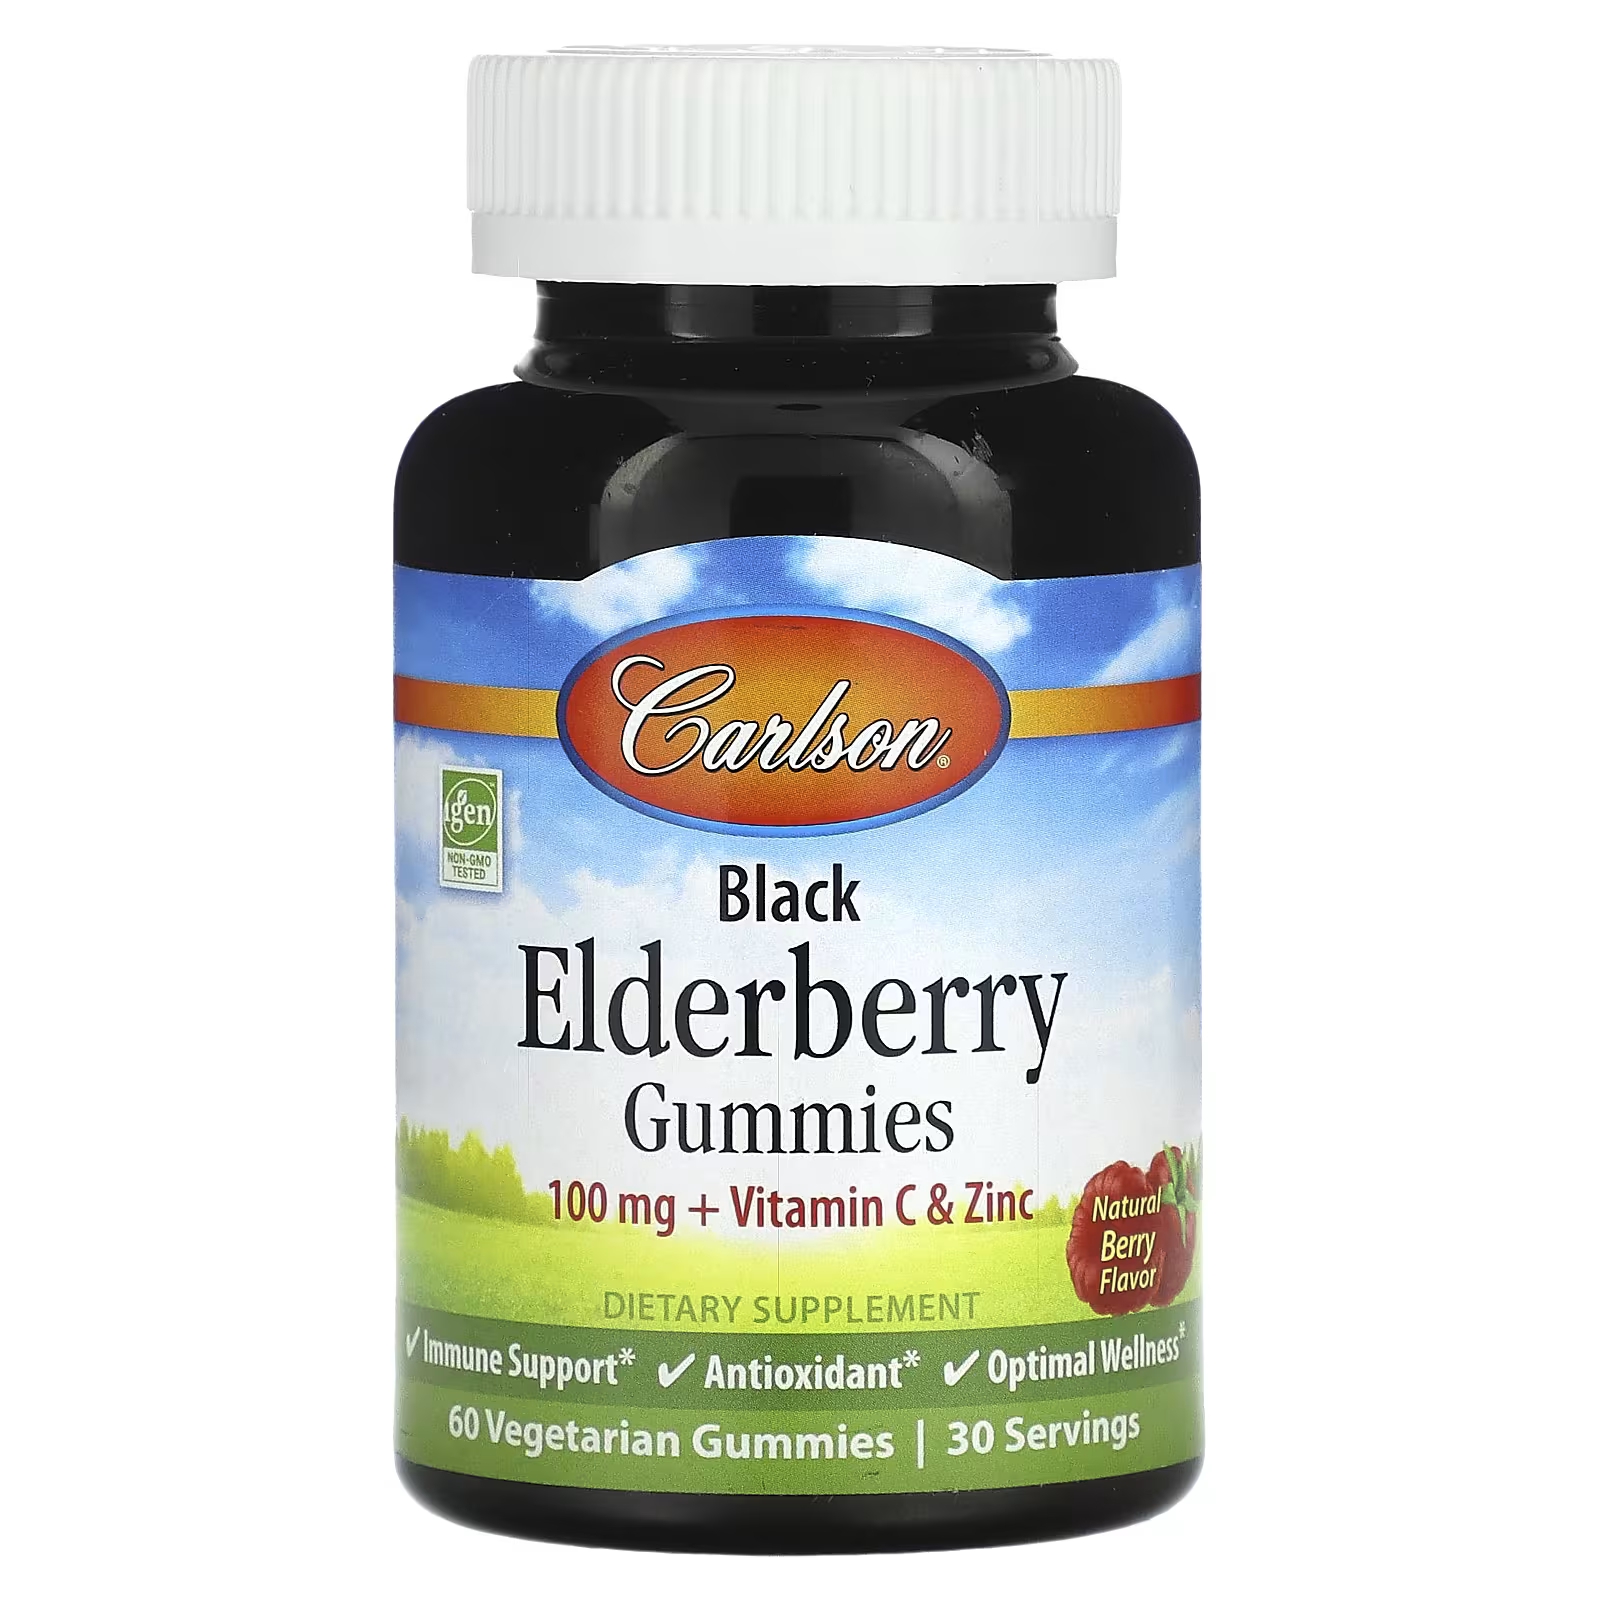 Пищевая добавка Carlson Black Elderberry Gummies Natural Berry, 60 вегетарианских конфет nuk first essentials таблетки для тройного всасывания для детей от 6 месяцев 2 таблетки